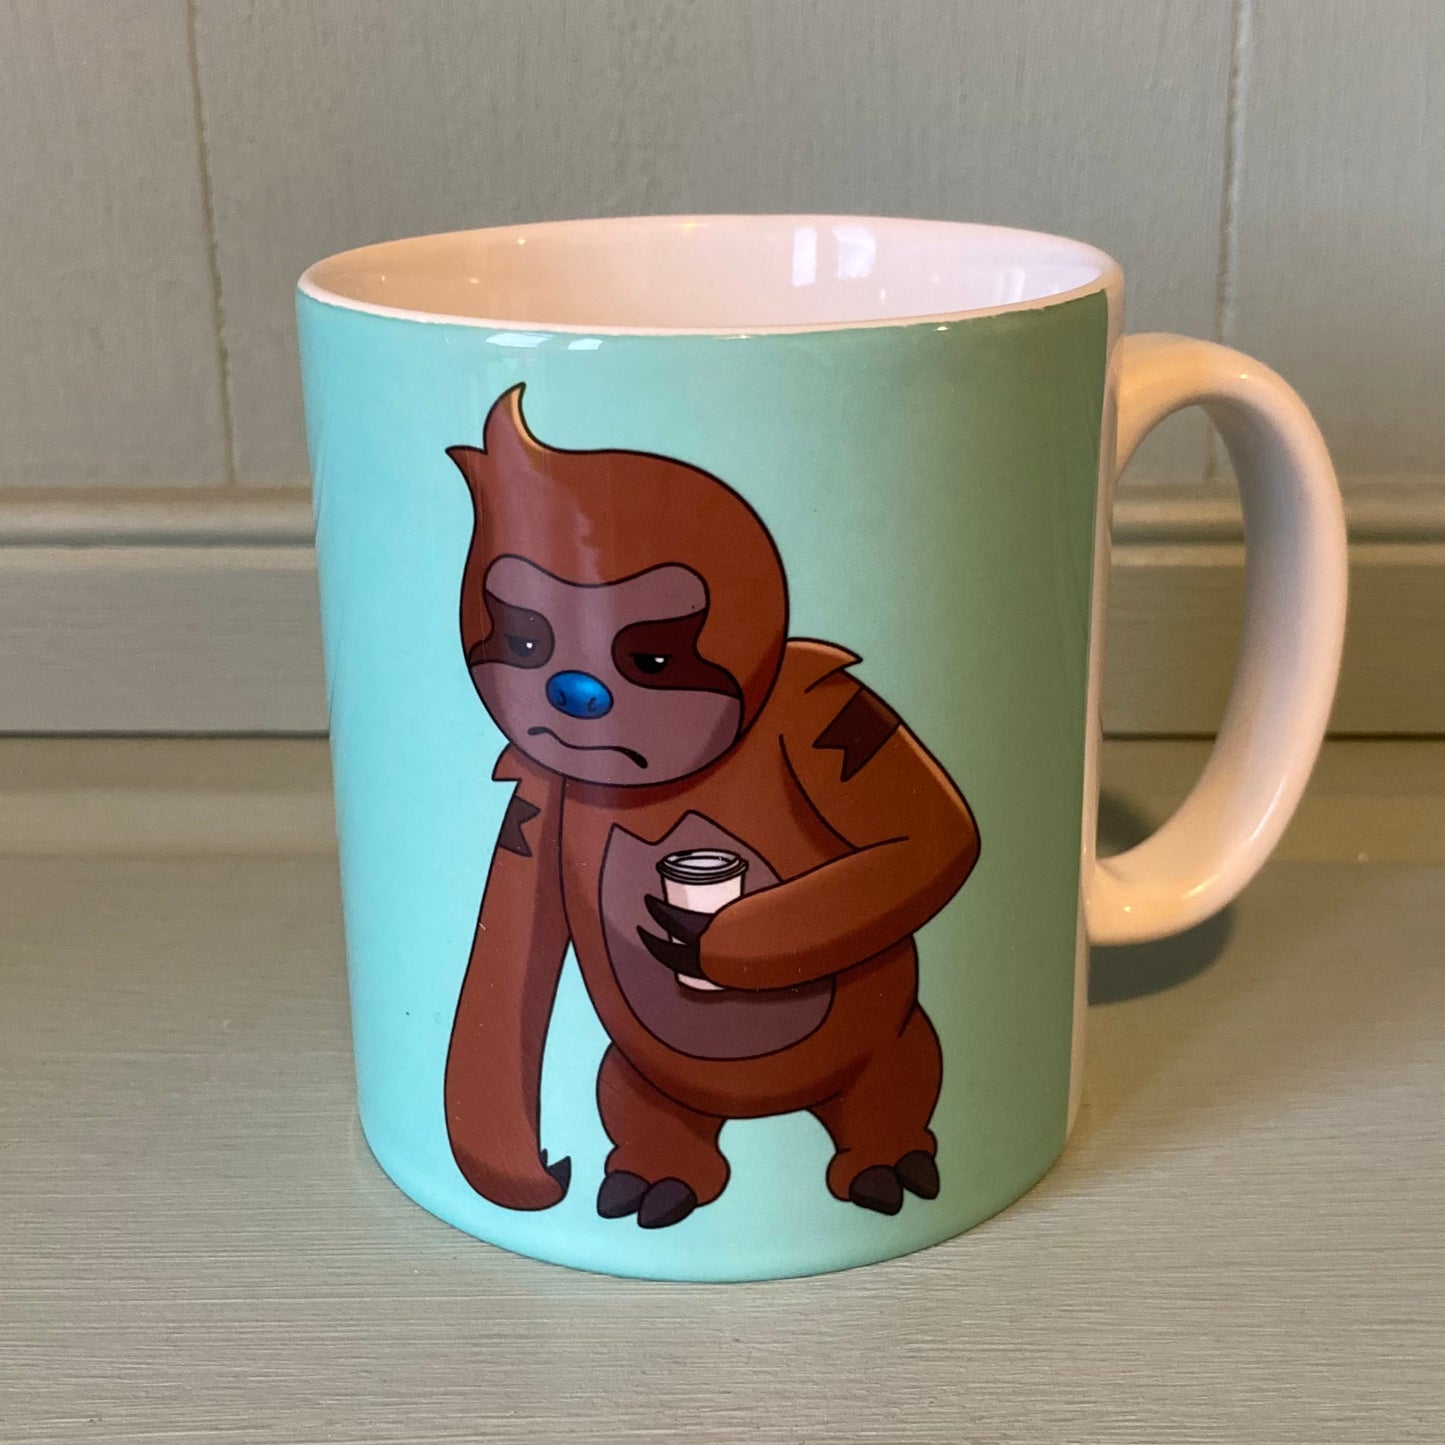 Simon the Sloth 10oz Ceramic Mug